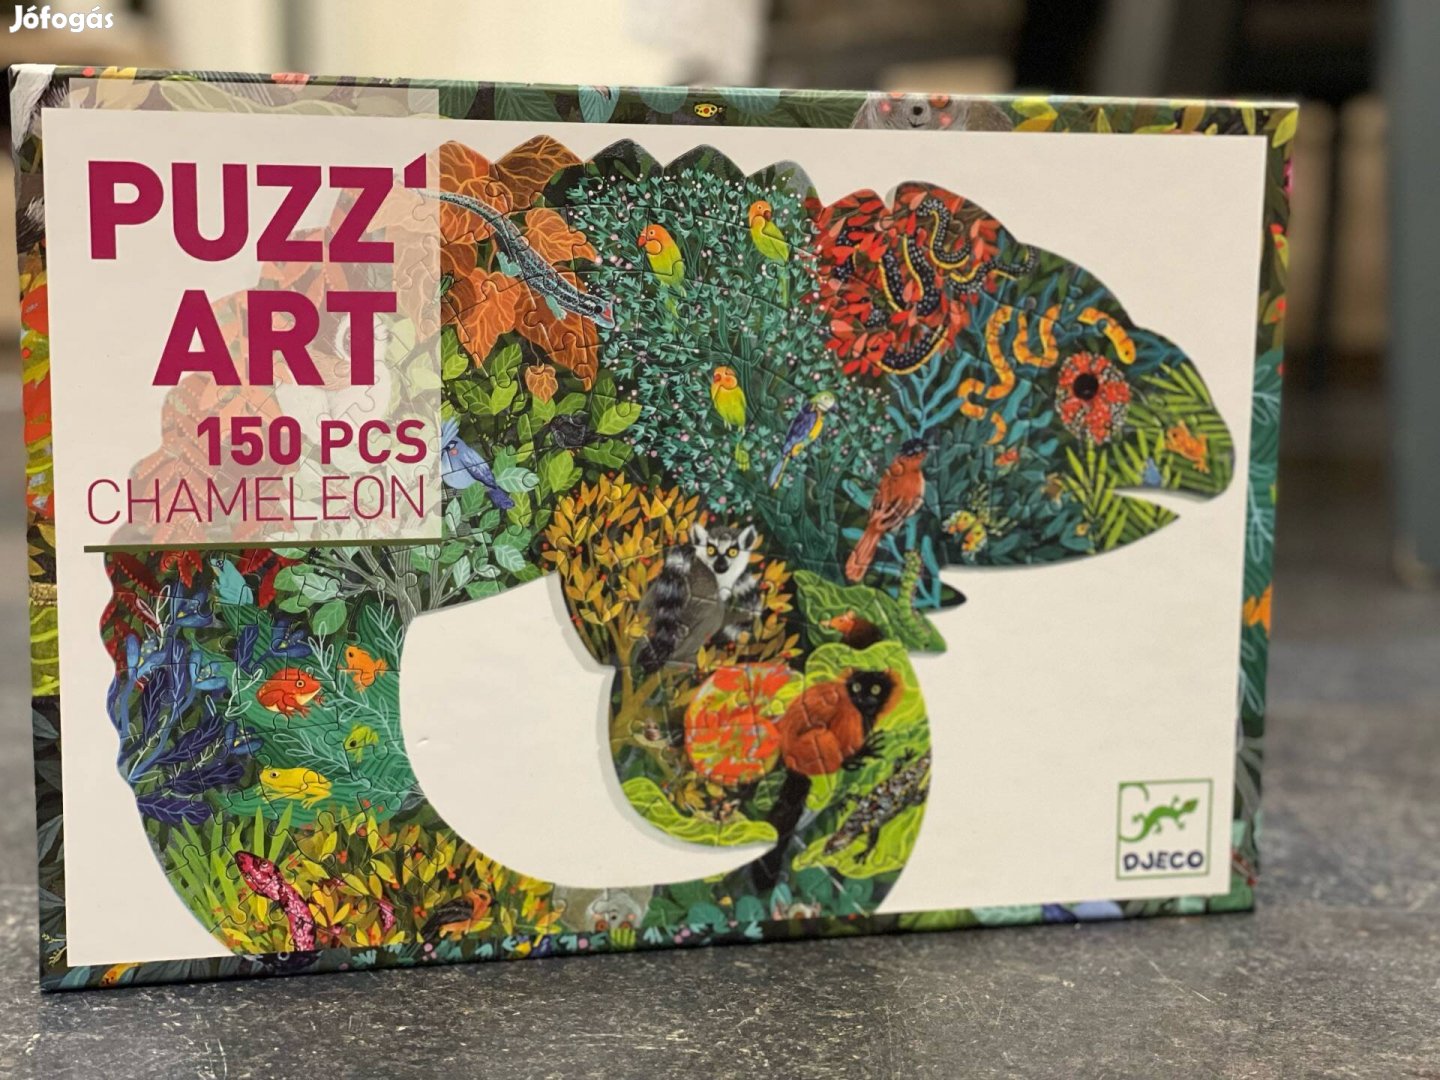 Eladó: Djeco Chameleon Díszes Művész Puzzle 150 db-os Játék